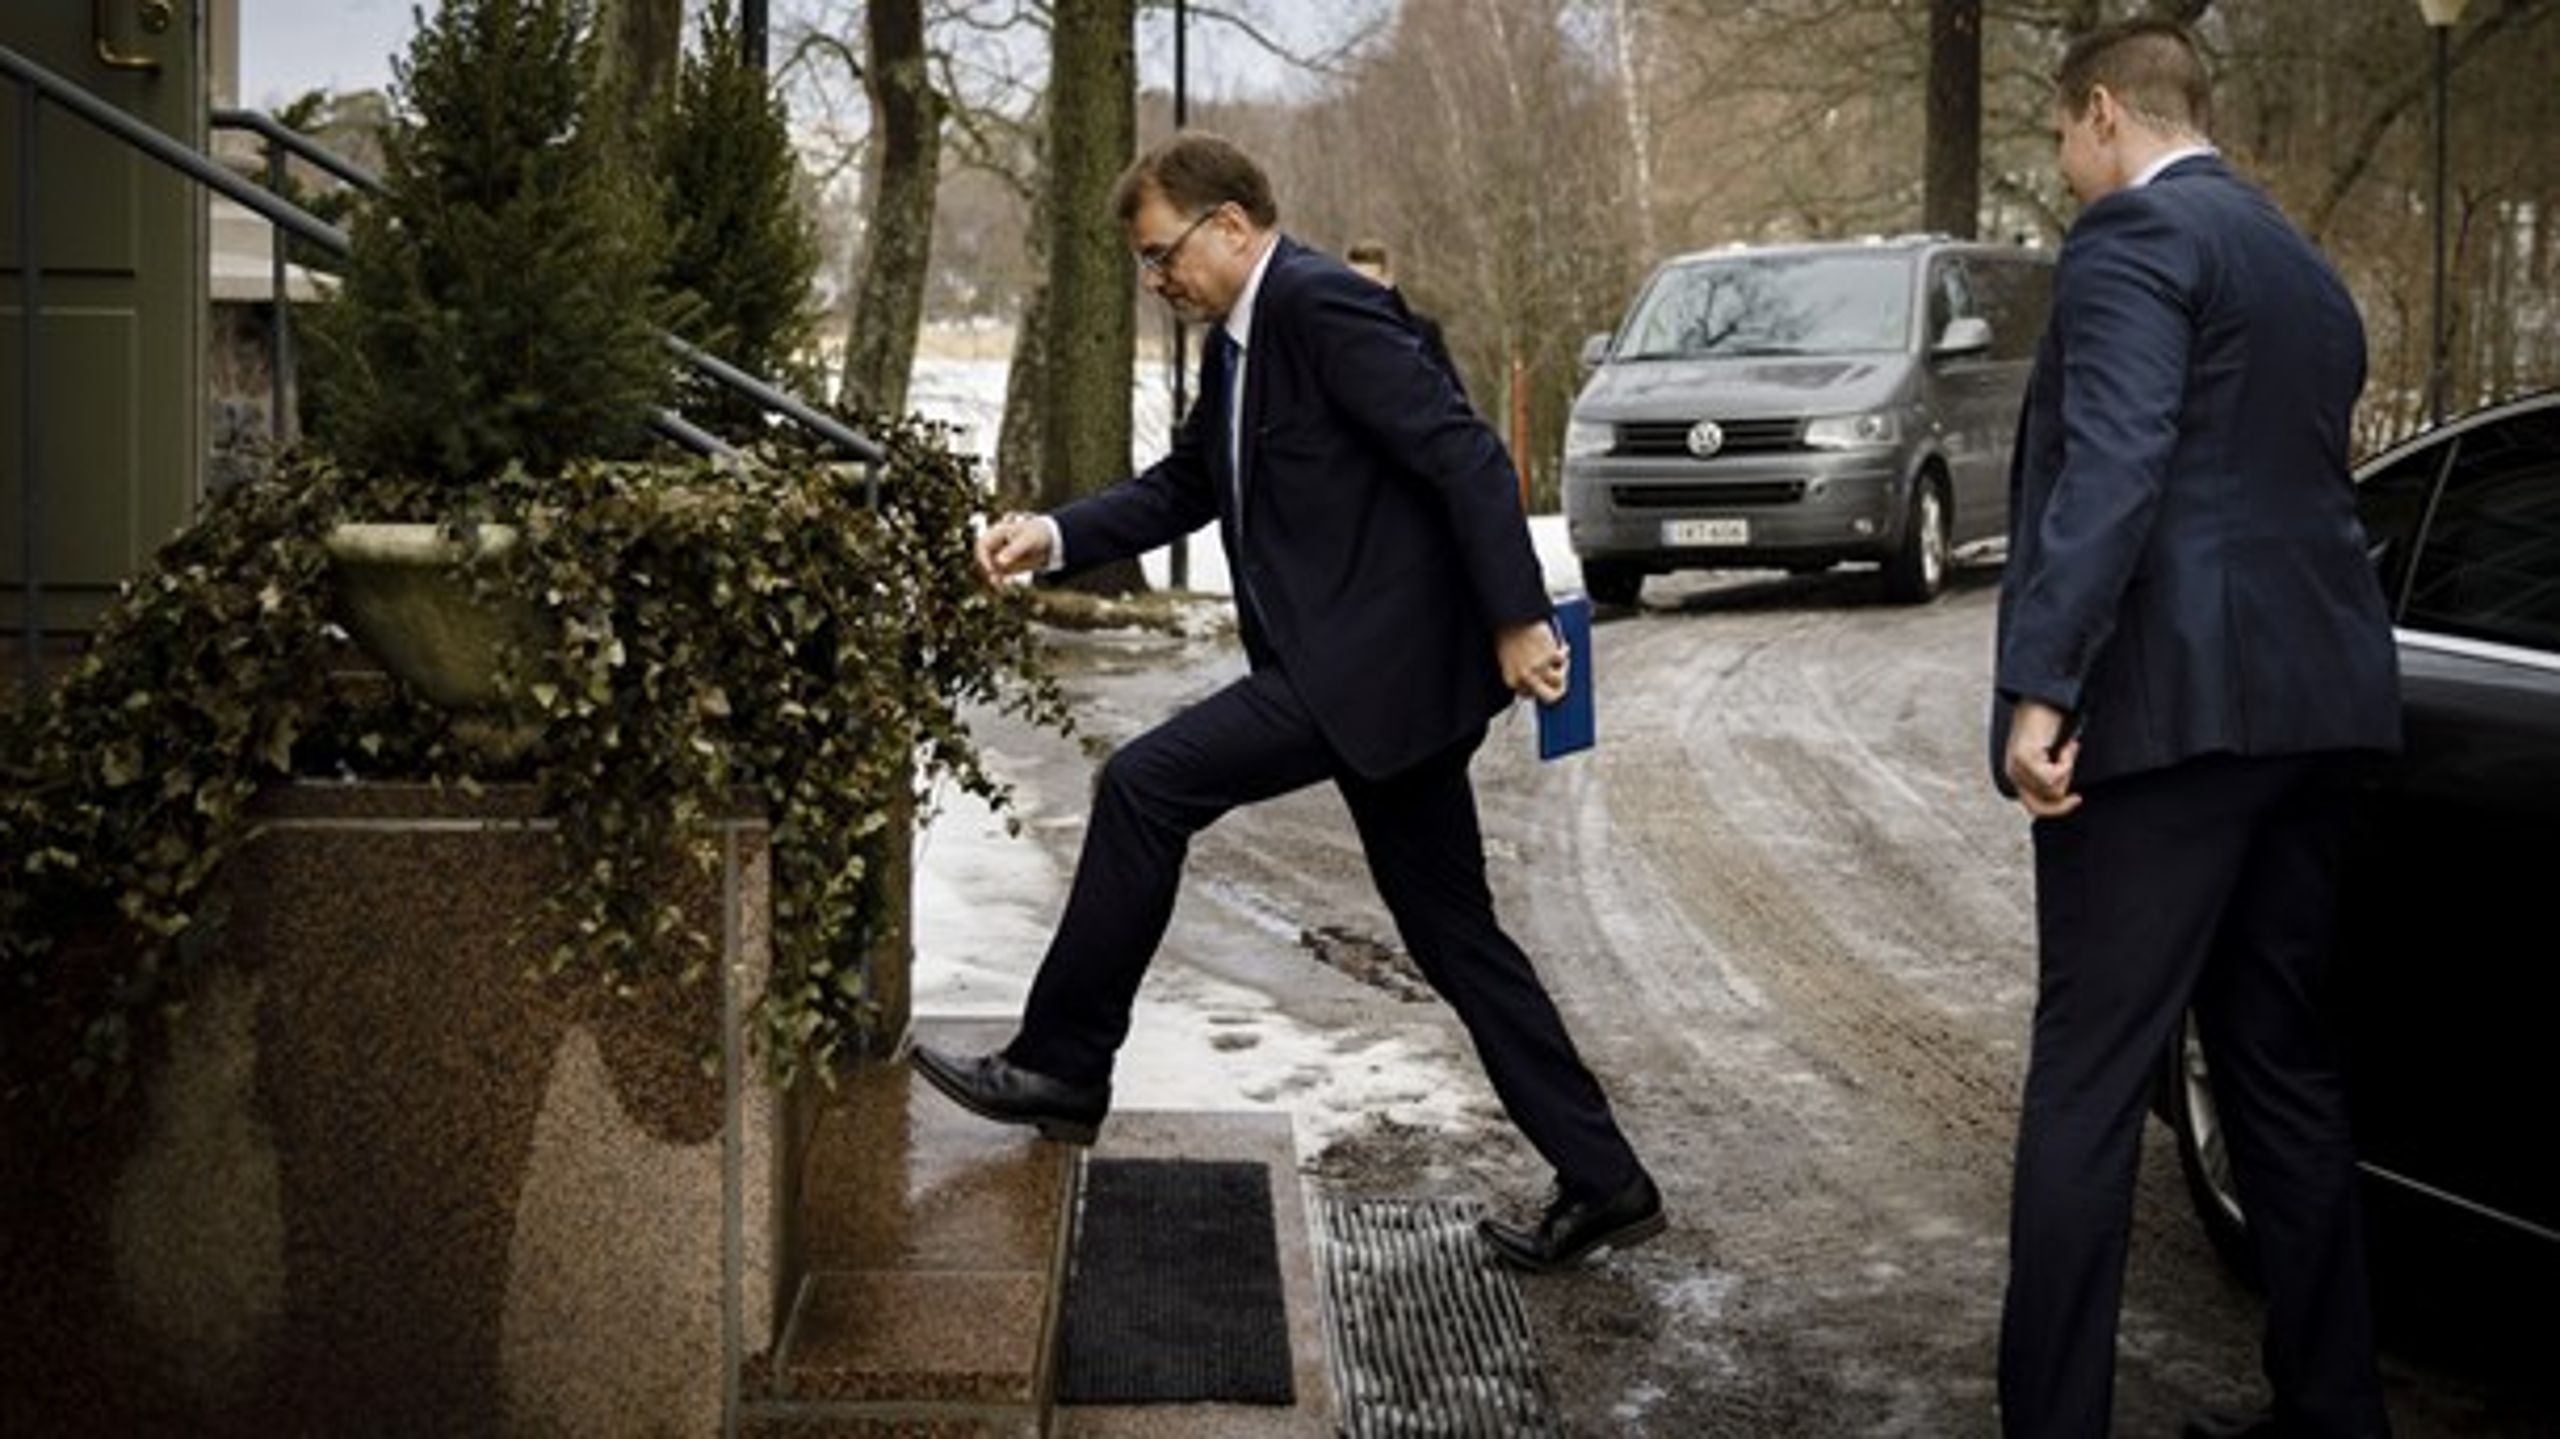 Den finske statminister, Juha Sipilä, ankommer til sin officielle bolig,&nbsp;Kesäranta, i Helsinki for at meddele sin regerings afgang.&nbsp;